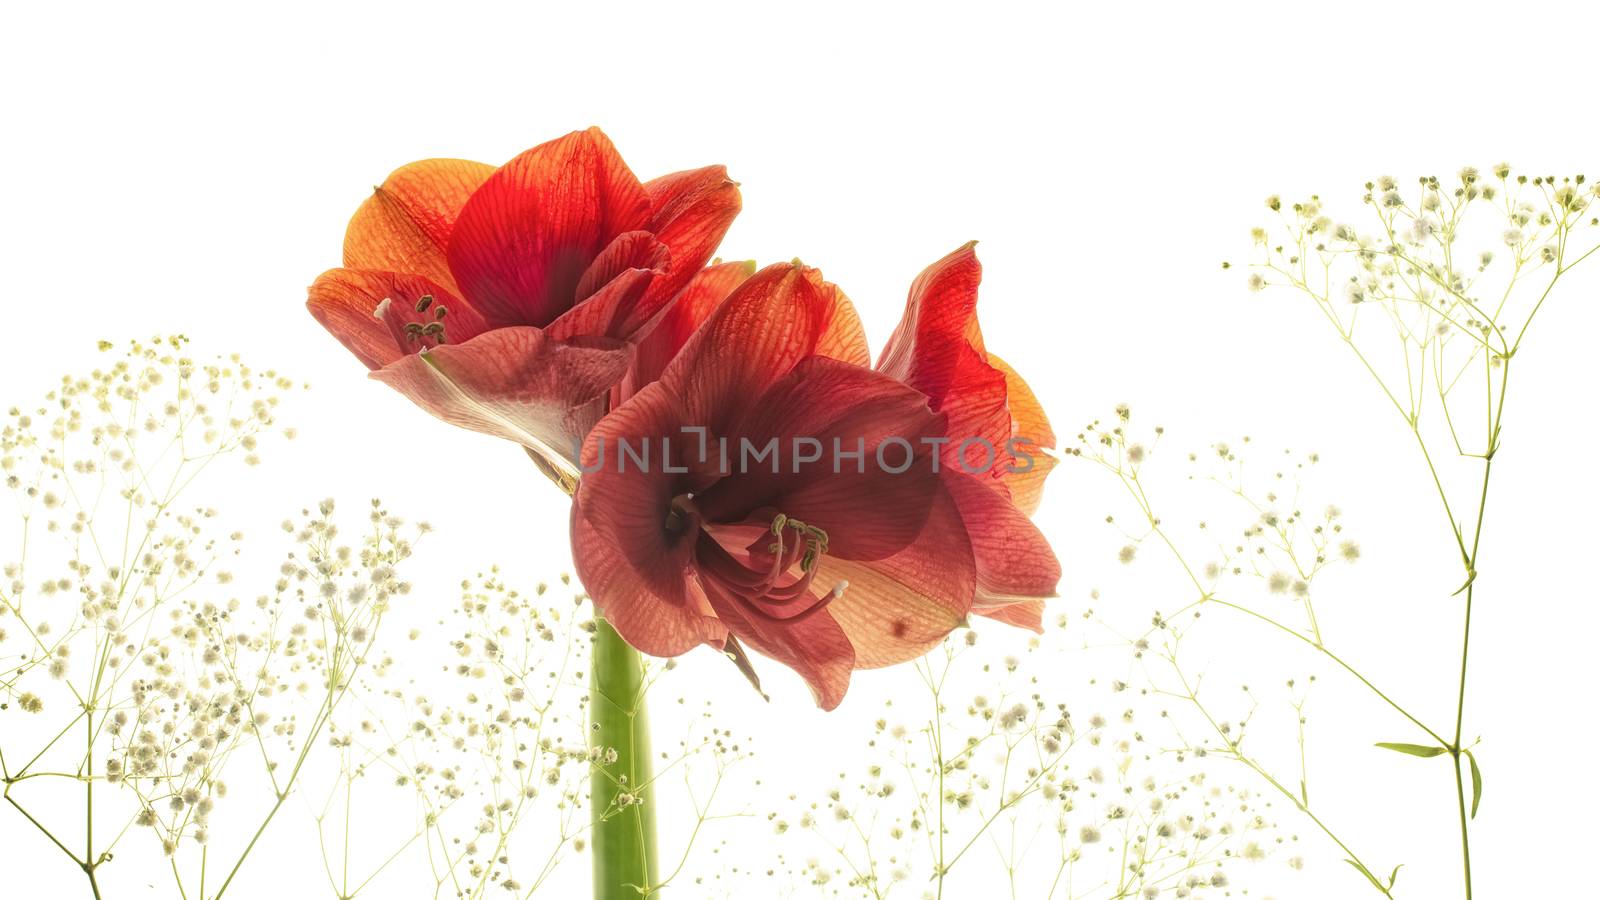 red flower amaryllis isolated on white background by sashokddt